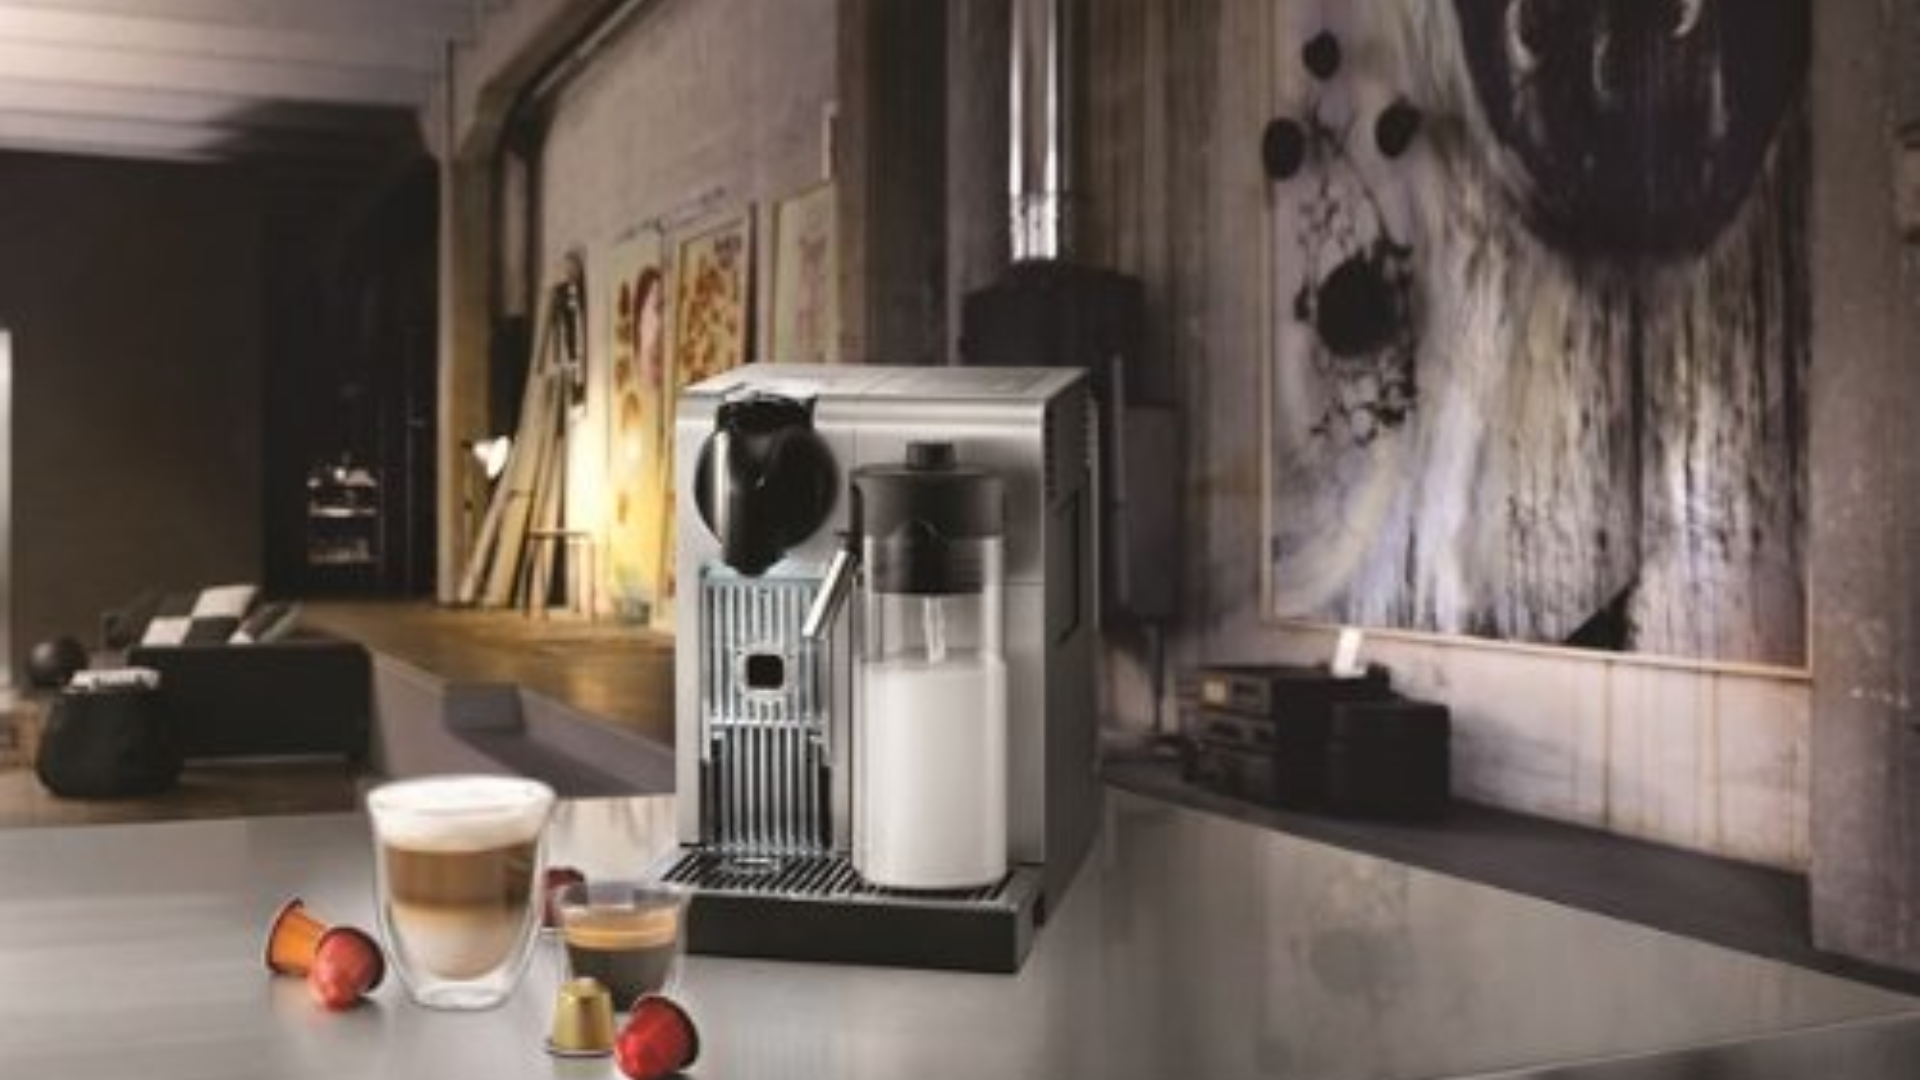 Nespresso Lattissima Pro Original Espresso Machine with Milk Frother by De’Longhi, 10.8″ L x 7.6″ W x 13″ H, Silver